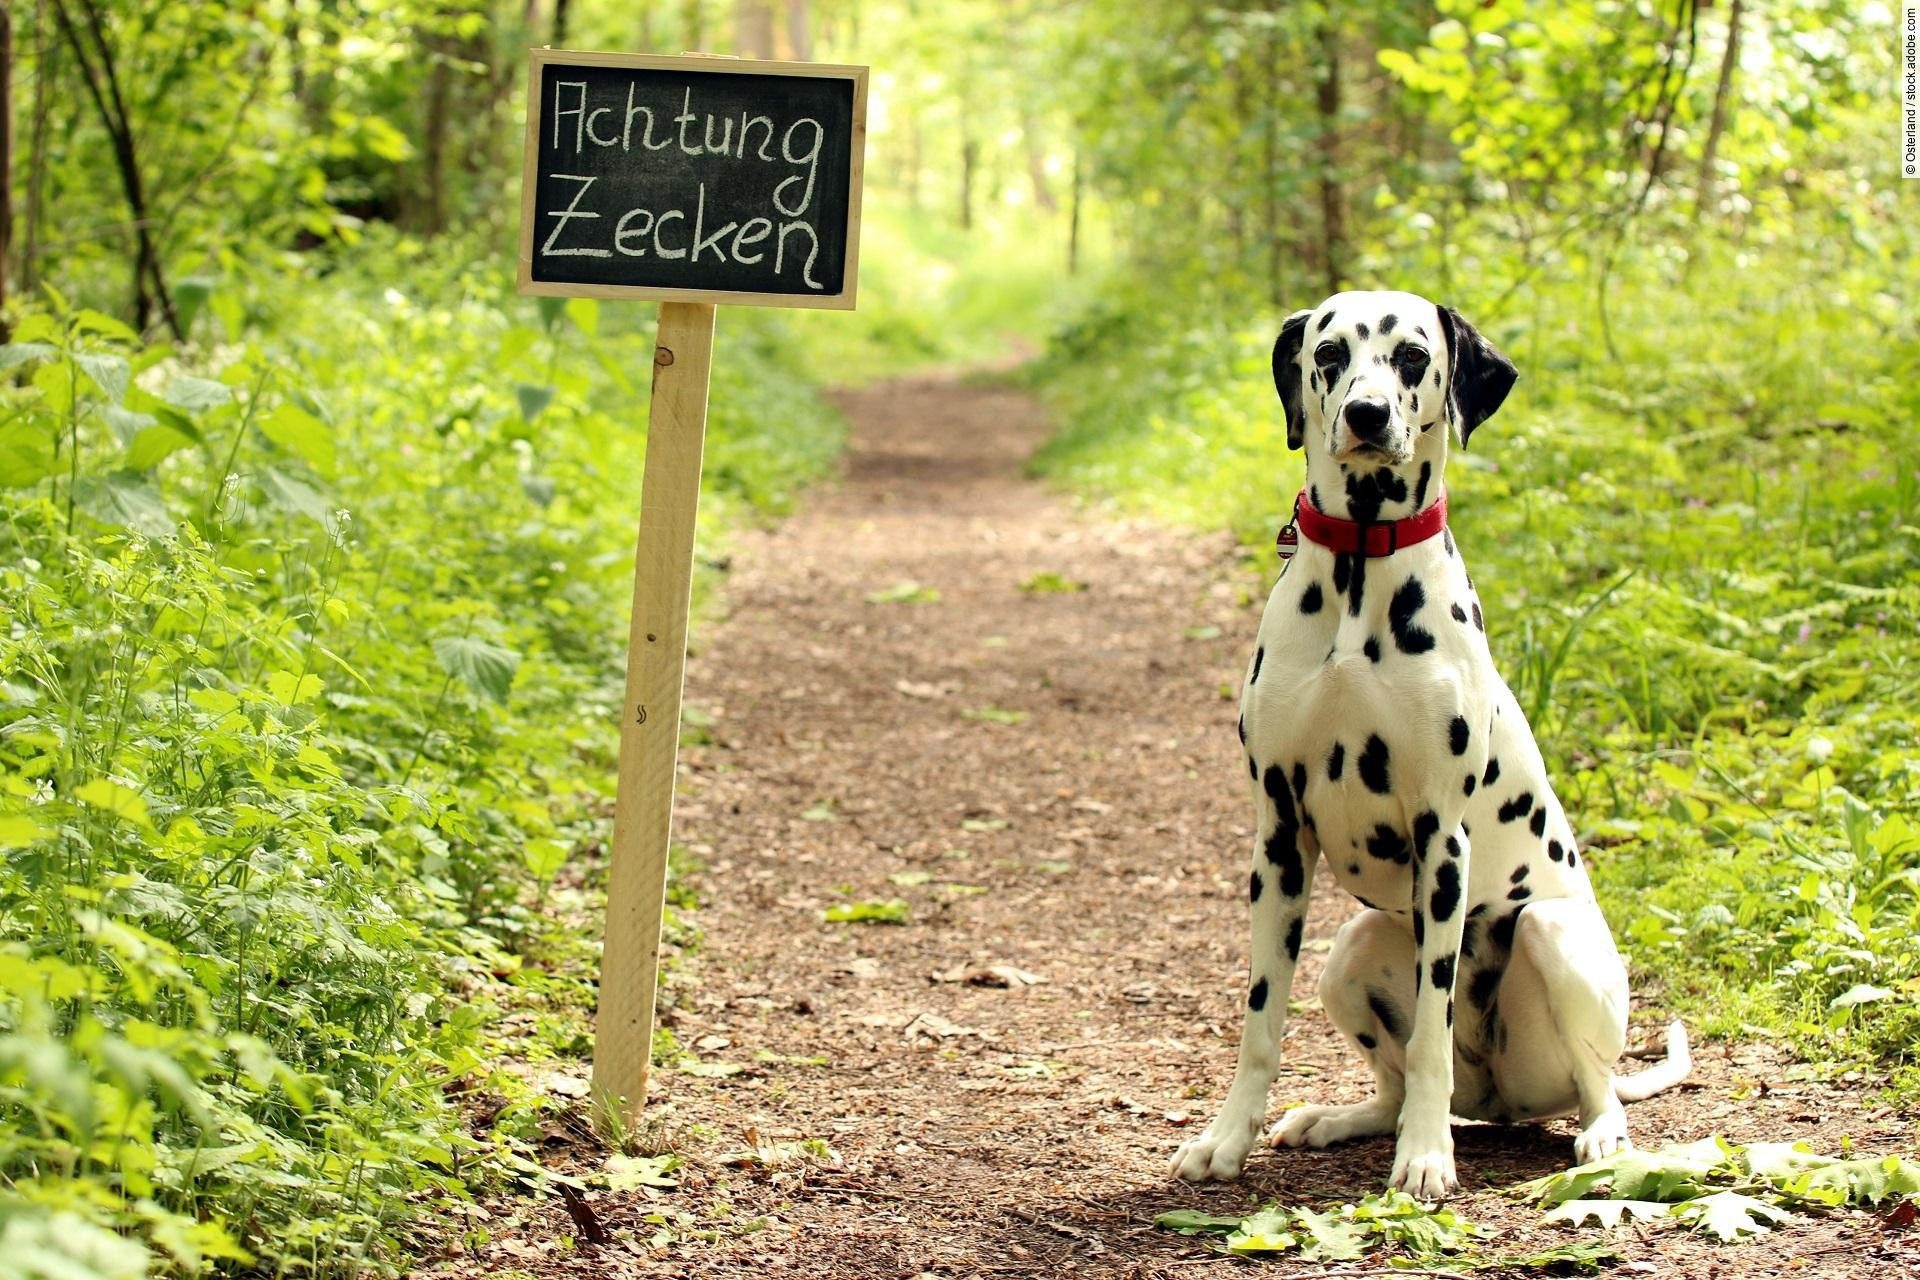 Warnschild "Achtung Zecken" mit Hund am Waldweg. 